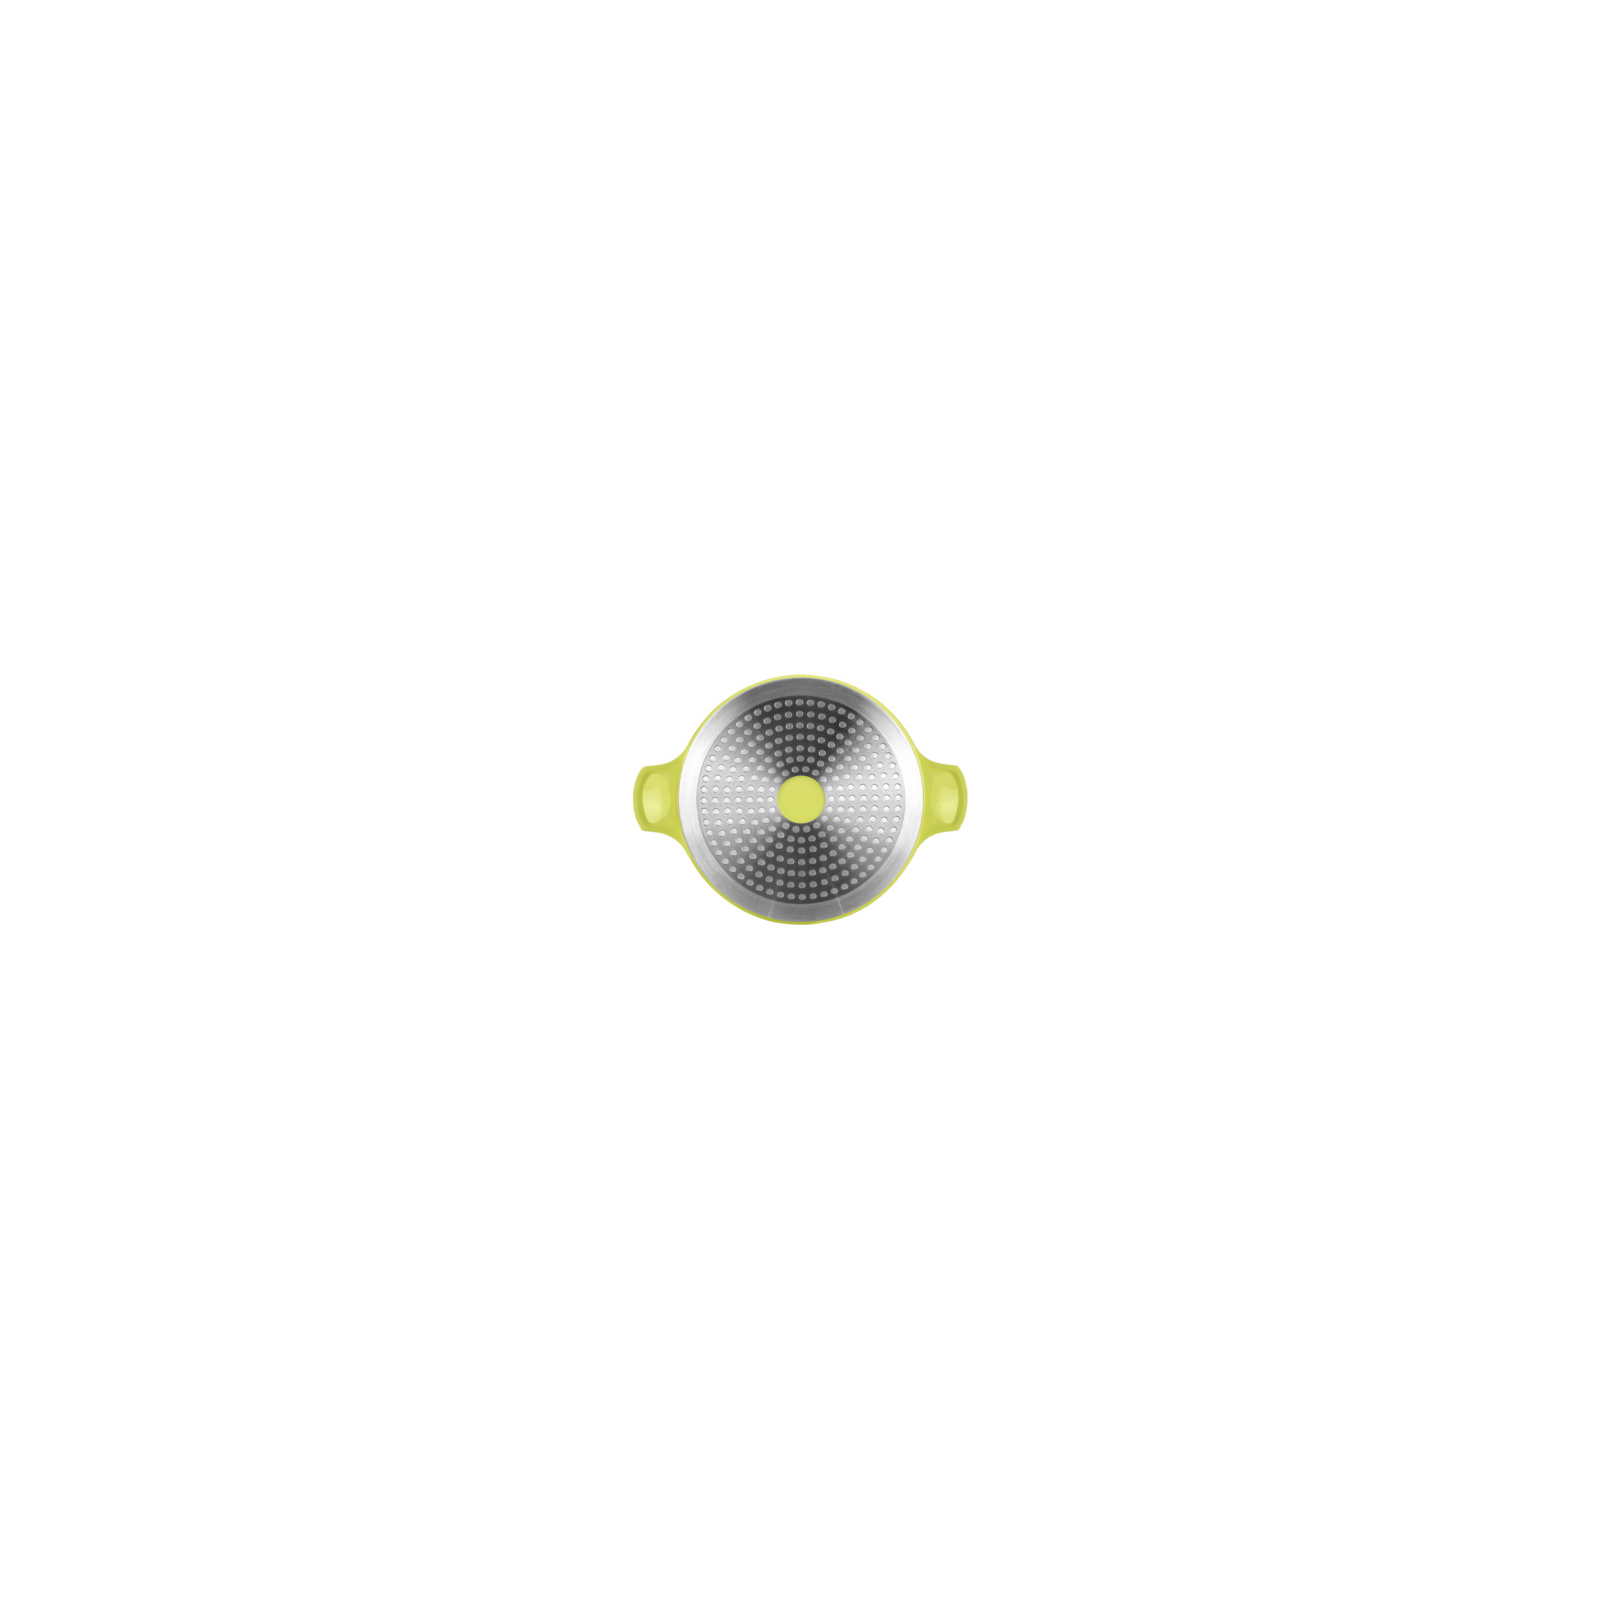 Каструля Ringel Zitrone Yellow 3.0л (RG-2108-20) зображення 6